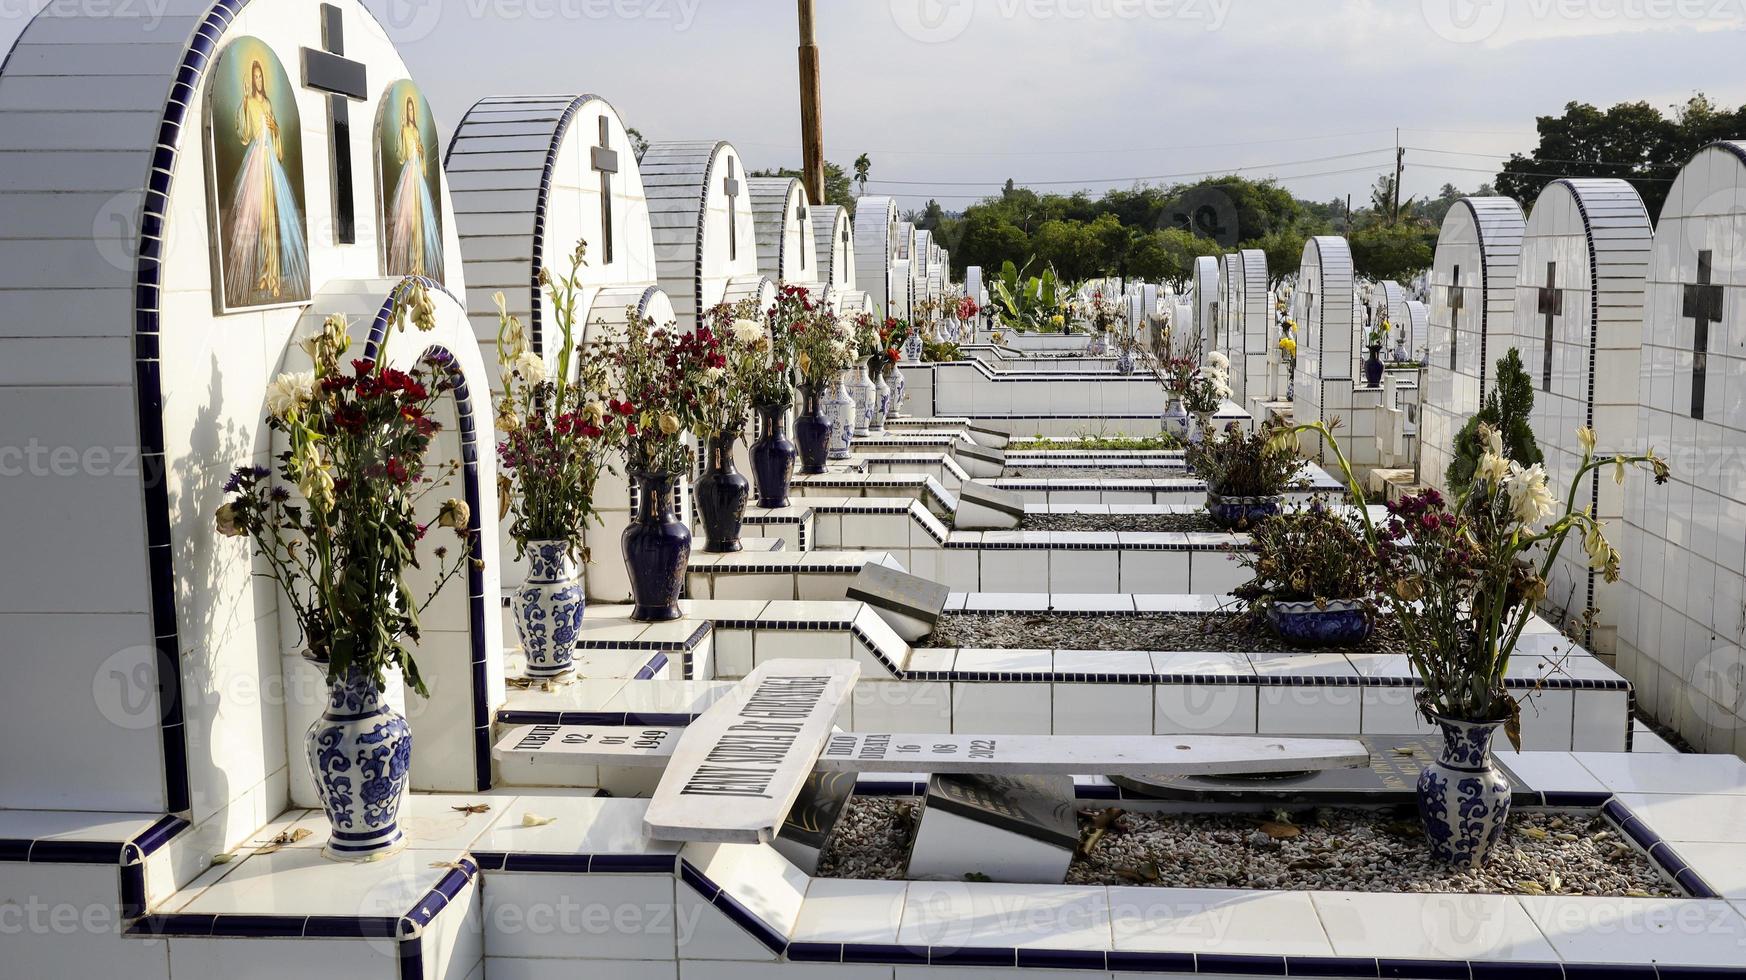 le cimetière public contient des tombes identiques en céramique blanche avec des fleurs. photo